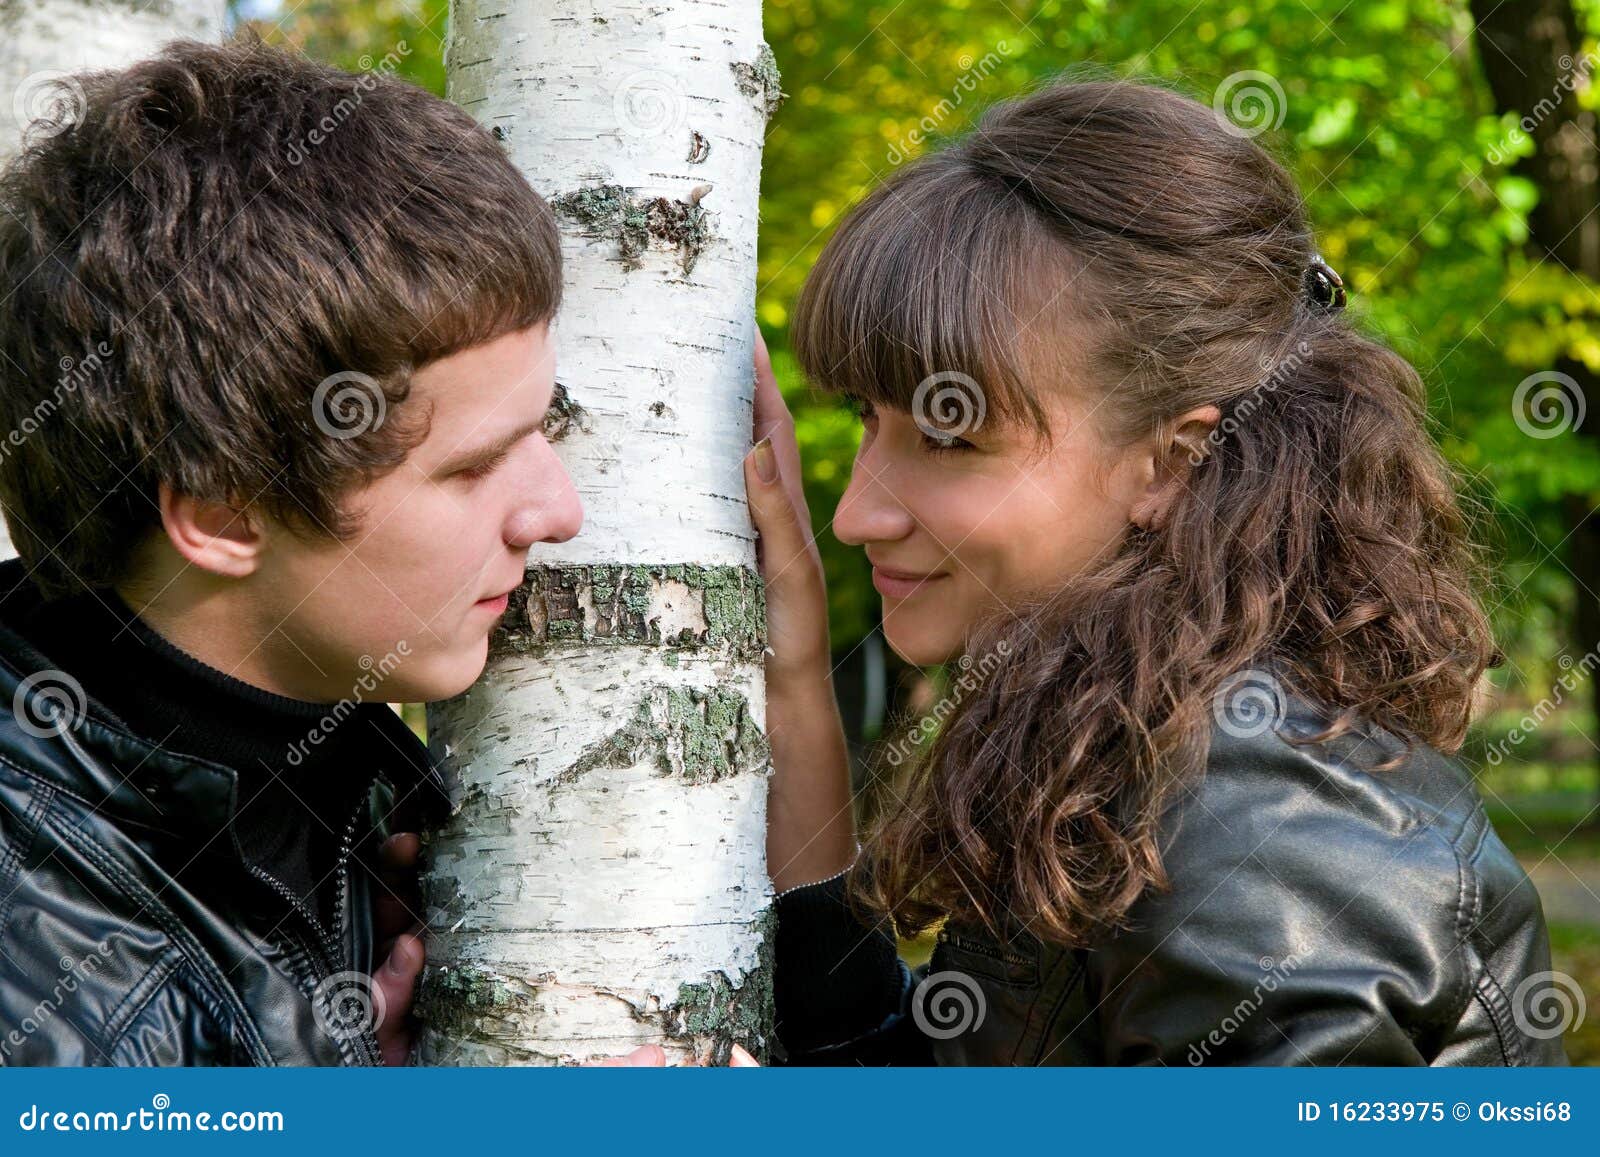 Мальчик березка. Обнимает березу. Парень обнимает березу. Пара в Березовом лесу. Мужчина и женщина под березой.